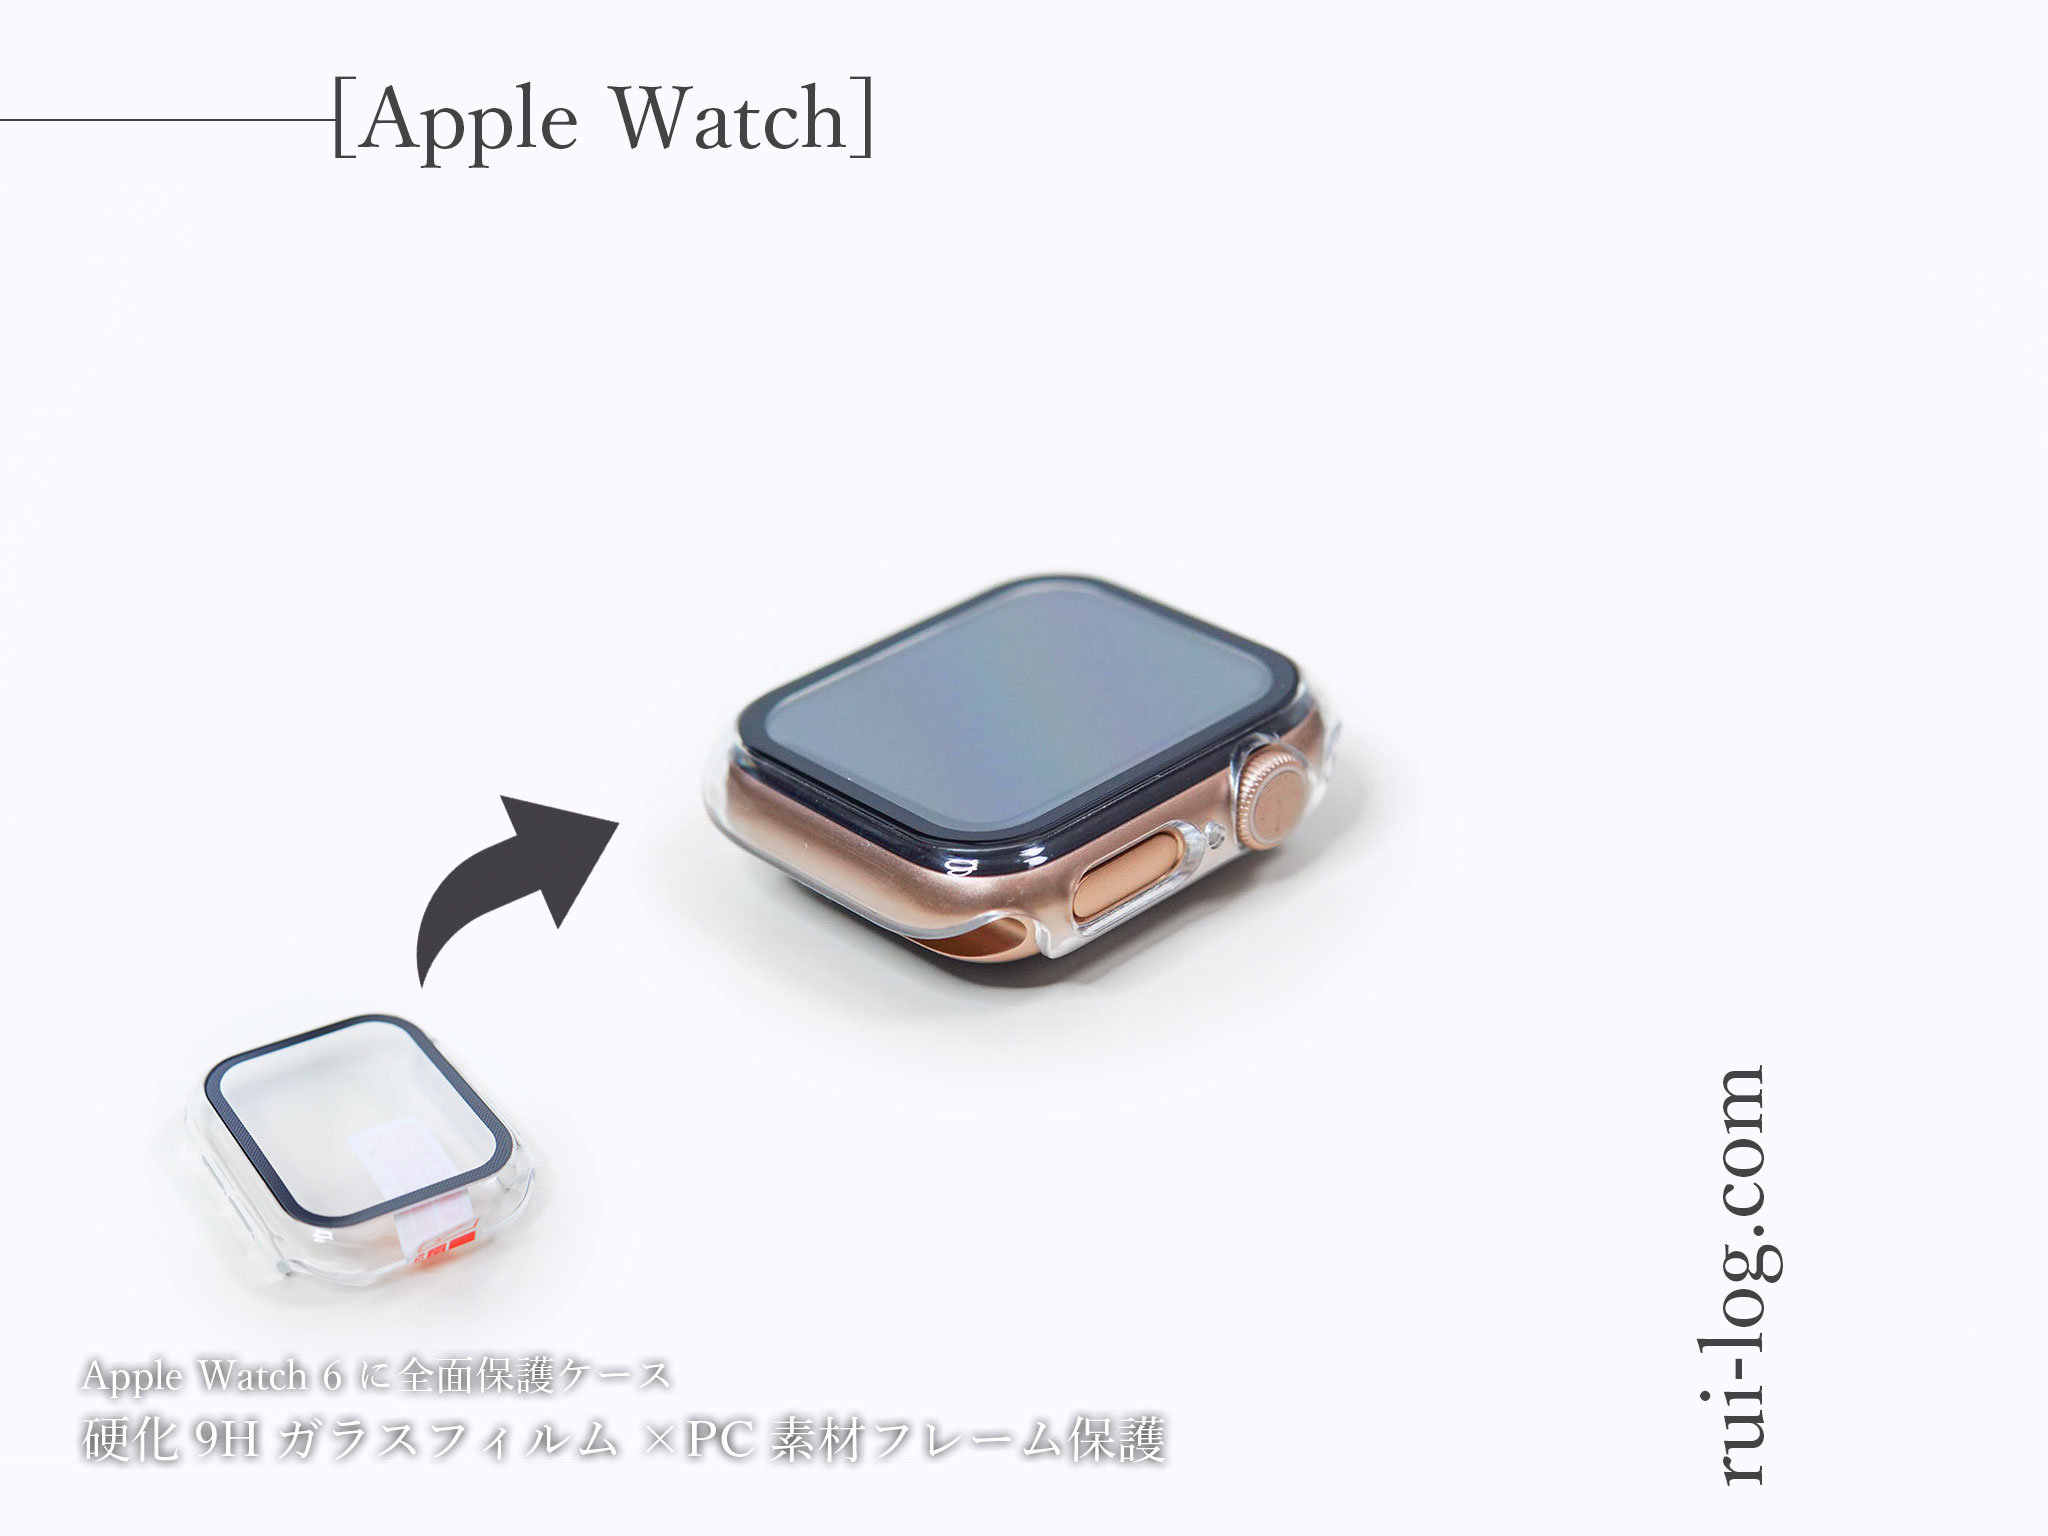 Apple Watch を全面保護ケースで保護！クリアで鮮明に見える LK Apple Watchケース 2枚入りをレビュー ルイログ